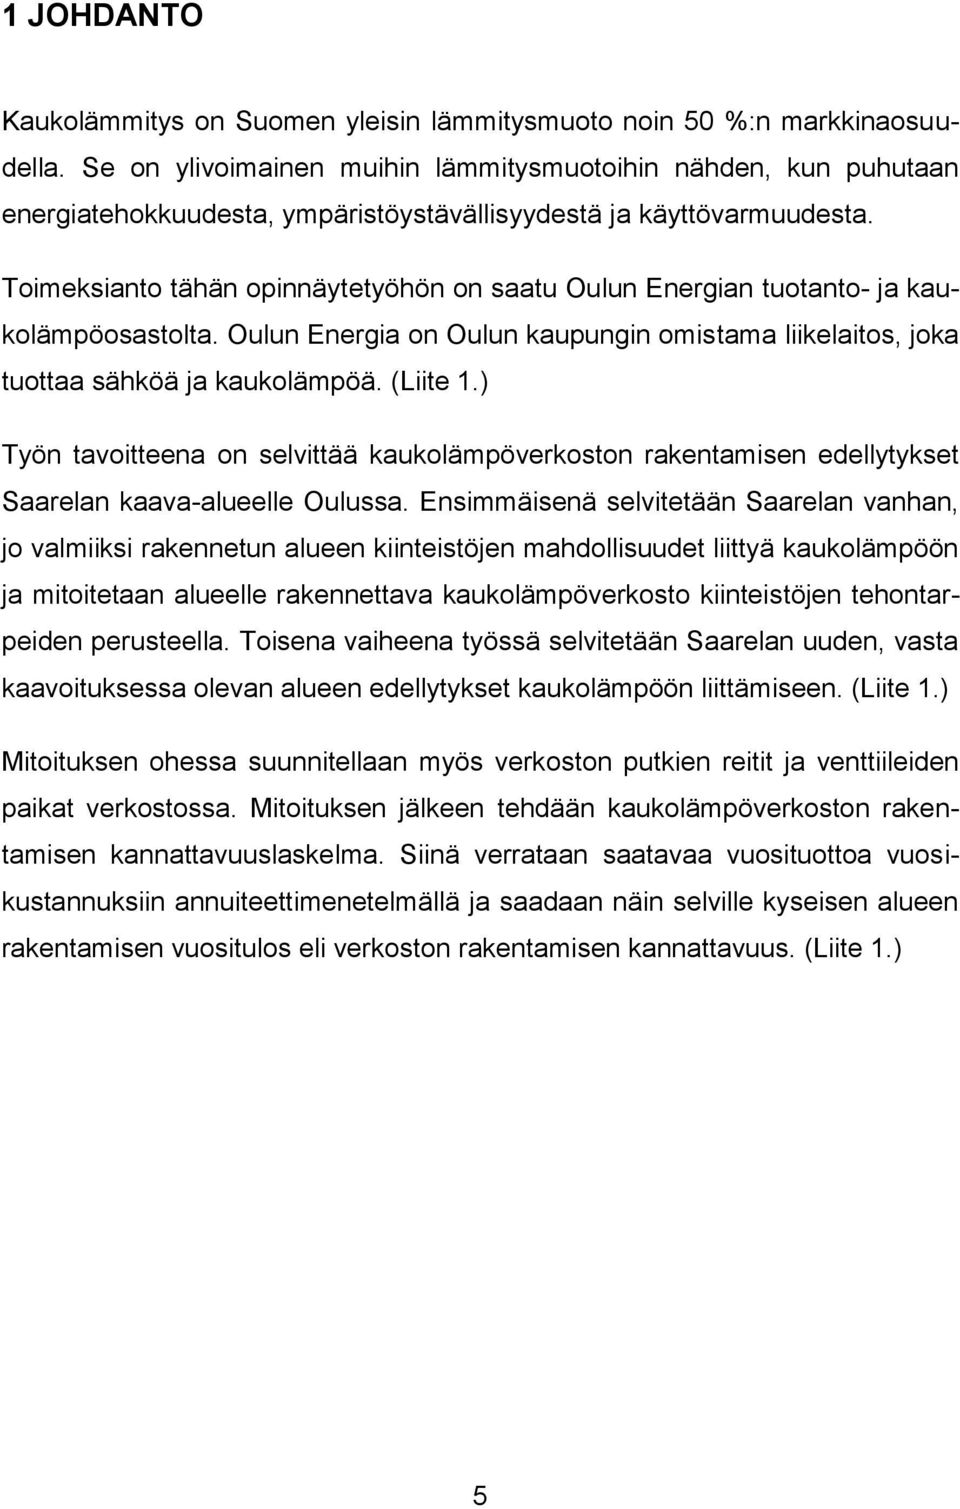 Toimeksianto tähän opinnäytetyöhön on saatu Oulun Energian tuotanto- ja kaukolämpöosastolta. Oulun Energia on Oulun kaupungin omistama liikelaitos, joka tuottaa sähköä ja kaukolämpöä. (Liite 1.